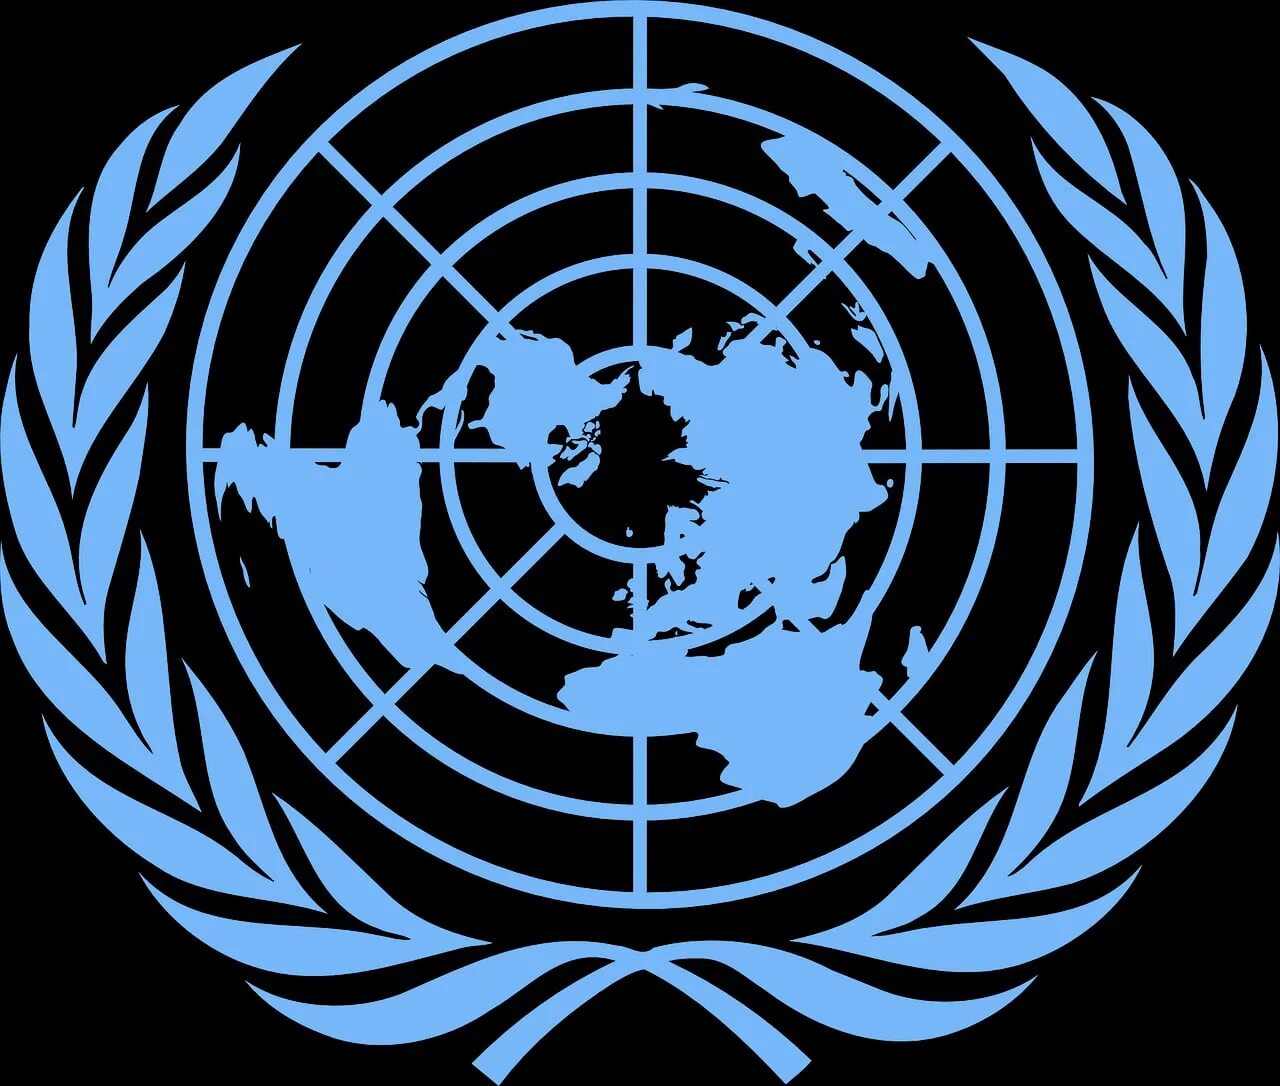 Оон о терроризме. ООН United Nations. Генеральная Ассамблея ООН логотип. Знак совета безопасности ООН. Совбез ООН знак.